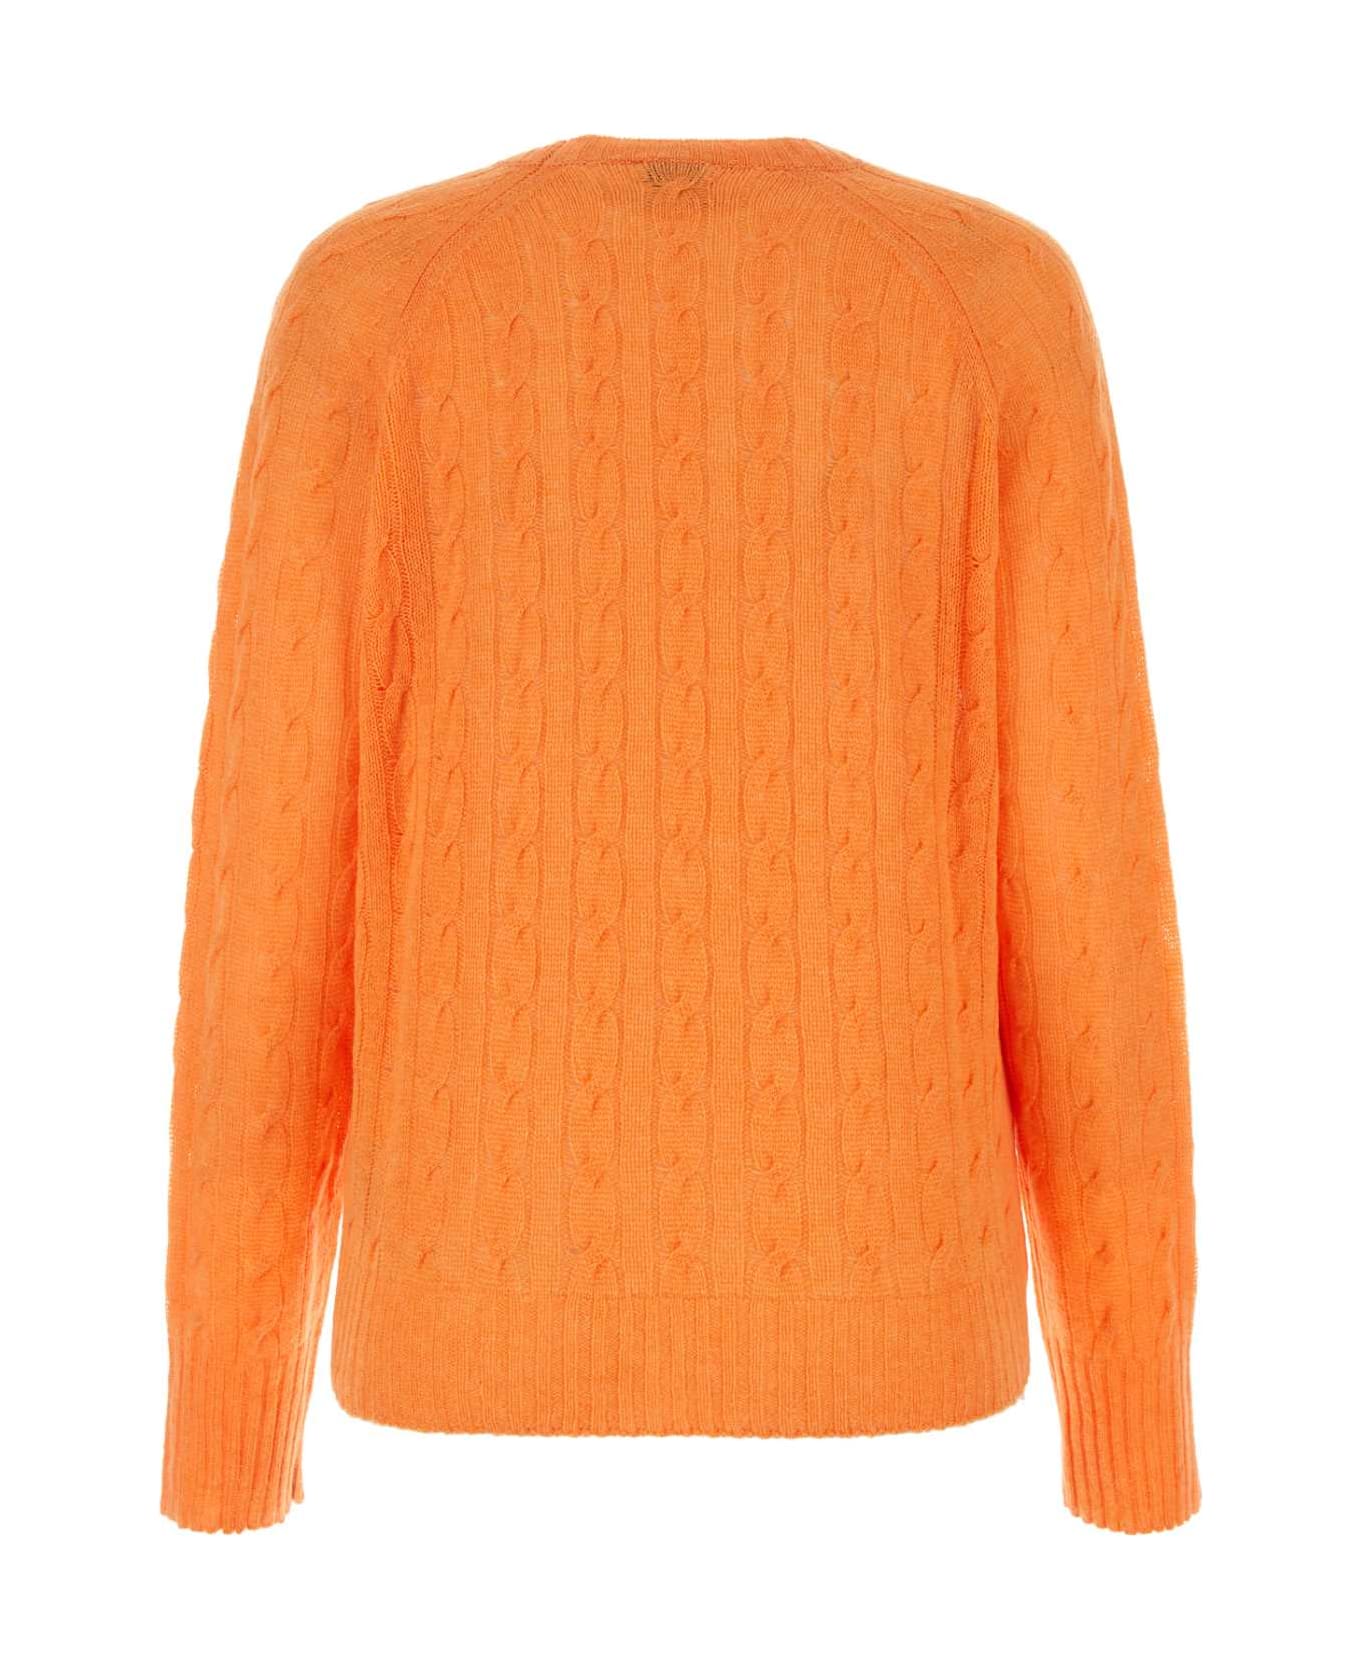 Etro Orange Cashmere Sweater - Orange